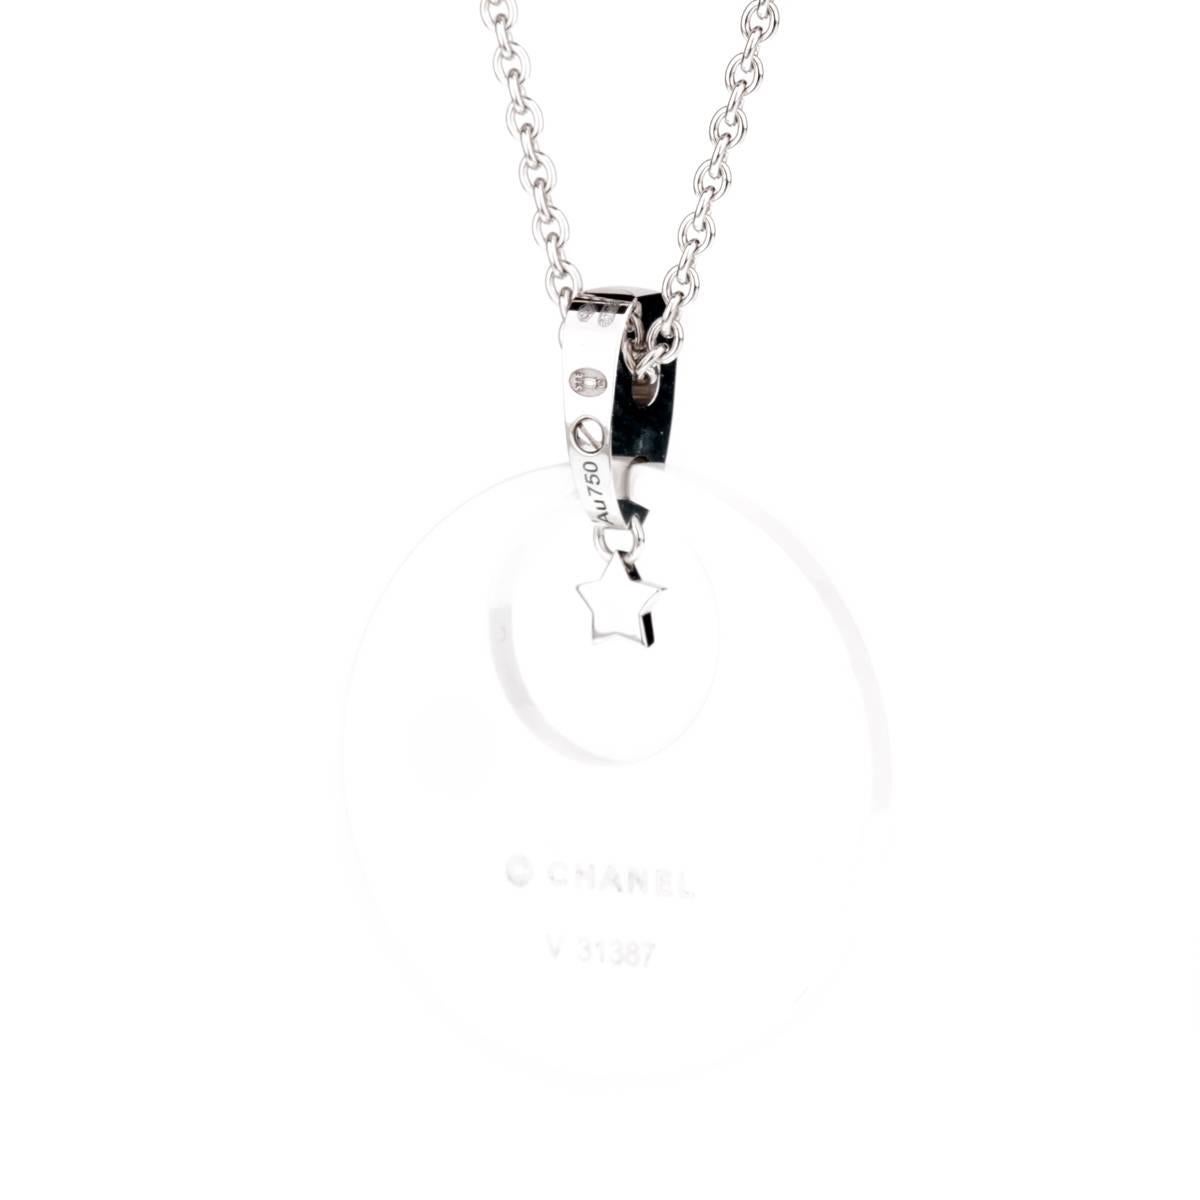 Un collier iconique de Chanel, issu de la collection Comete, présentant un éblouissant étalage de diamants ronds de taille brillant sertis en or blanc 18 carats et en céramique.

Longueur du collier : 16 pouces
Largeur du pendentif : 1